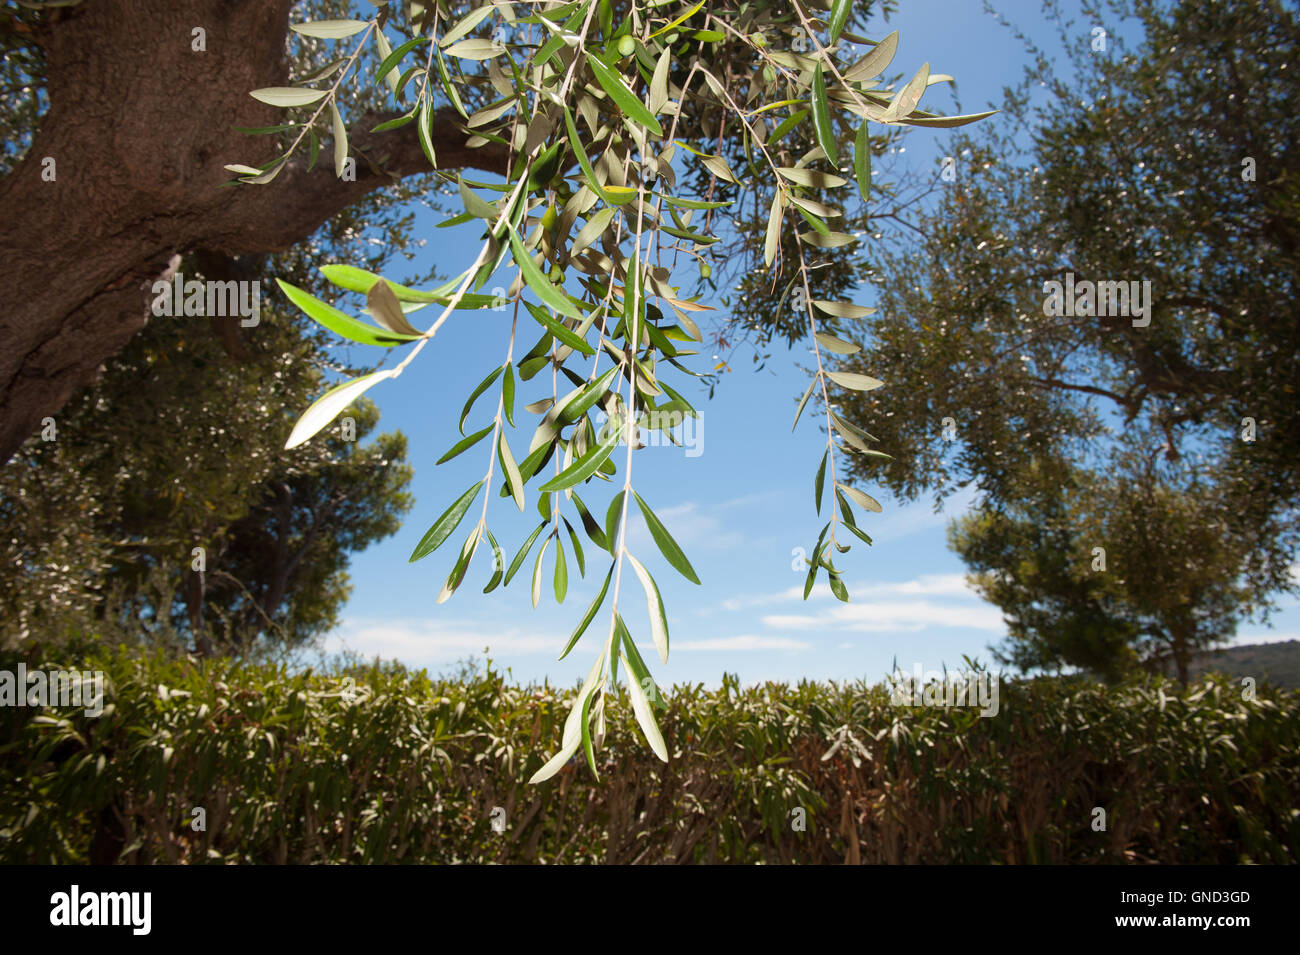 Albero di olivo dettaglio ramo con alcune olive verdi pronti per la raccolta cielo blu in background Foto Stock